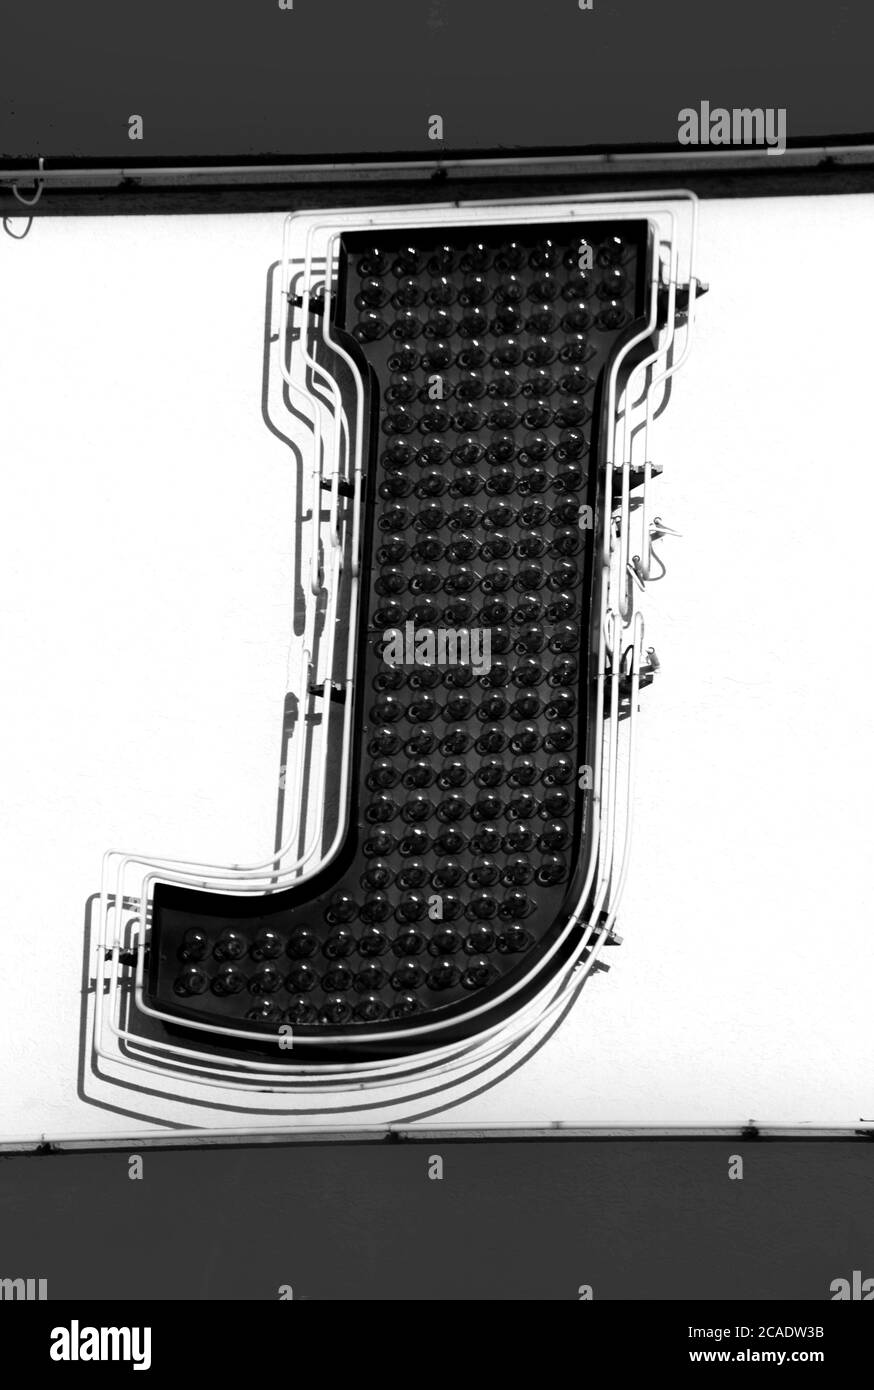 La lettre J est constituée d'ampoules transparentes. Des néons illuminent la lettre. Image en noir et blanc. Banque D'Images